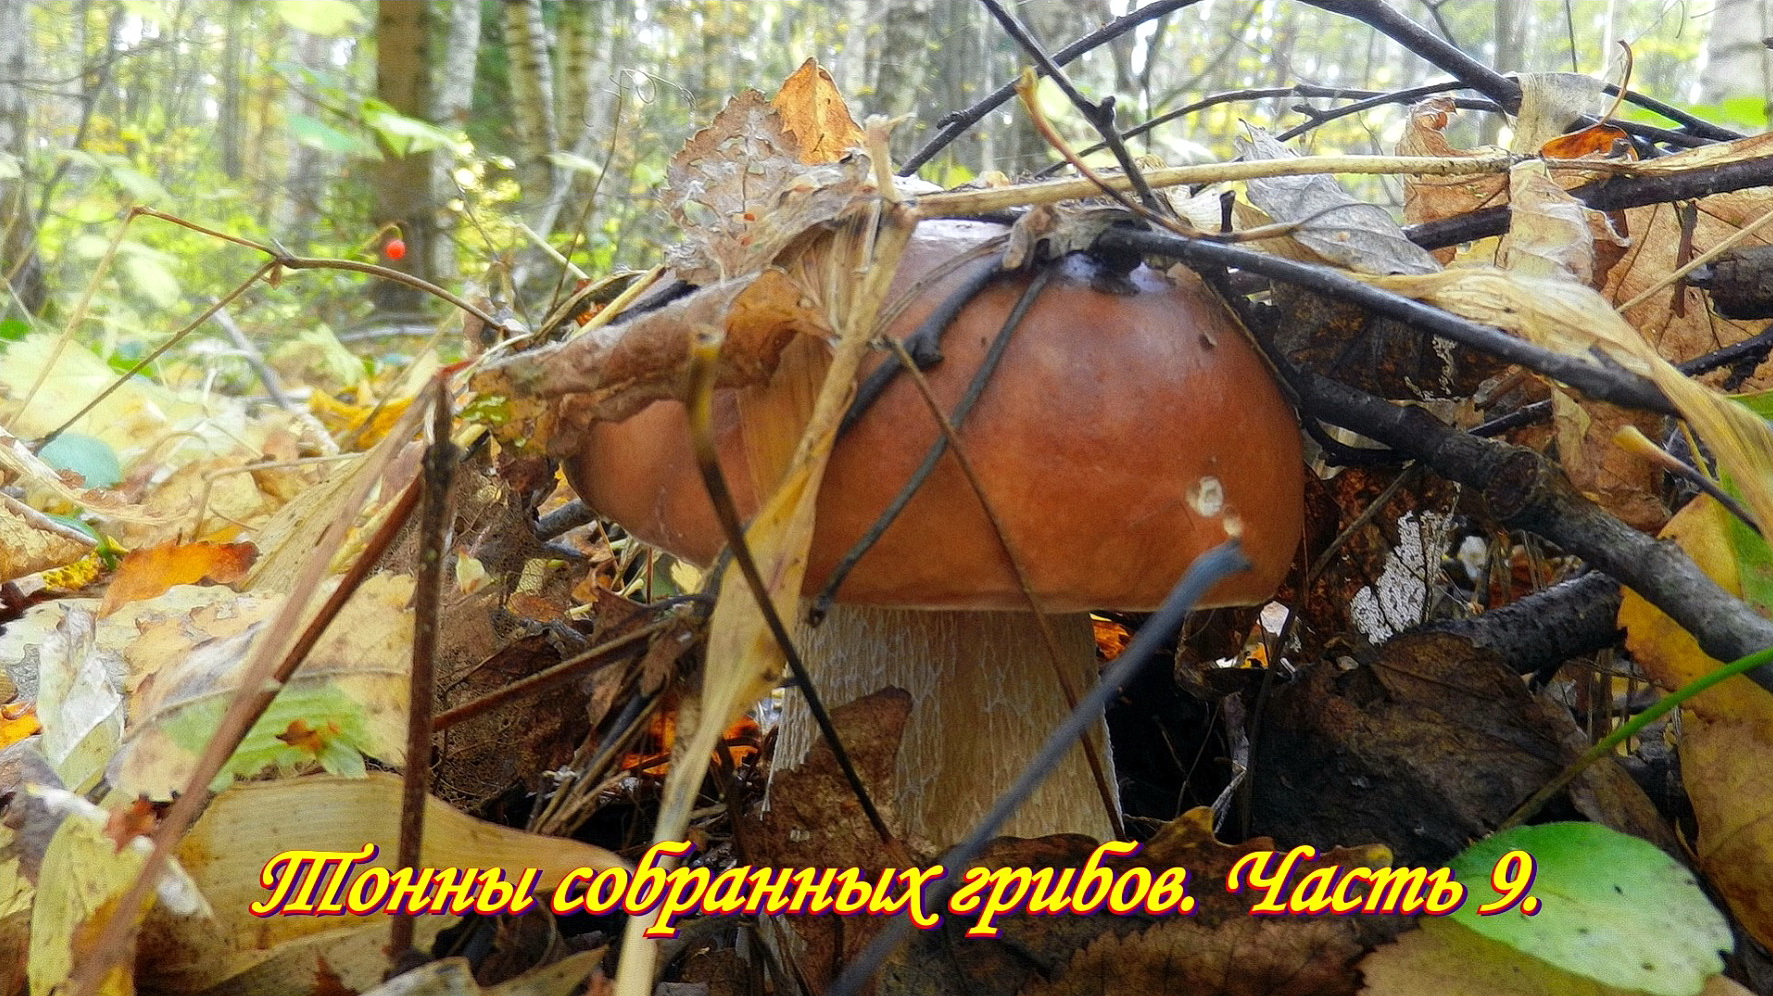 После выходных в лесу грибы есть .  Тонны собранных грибов. Часть 9.